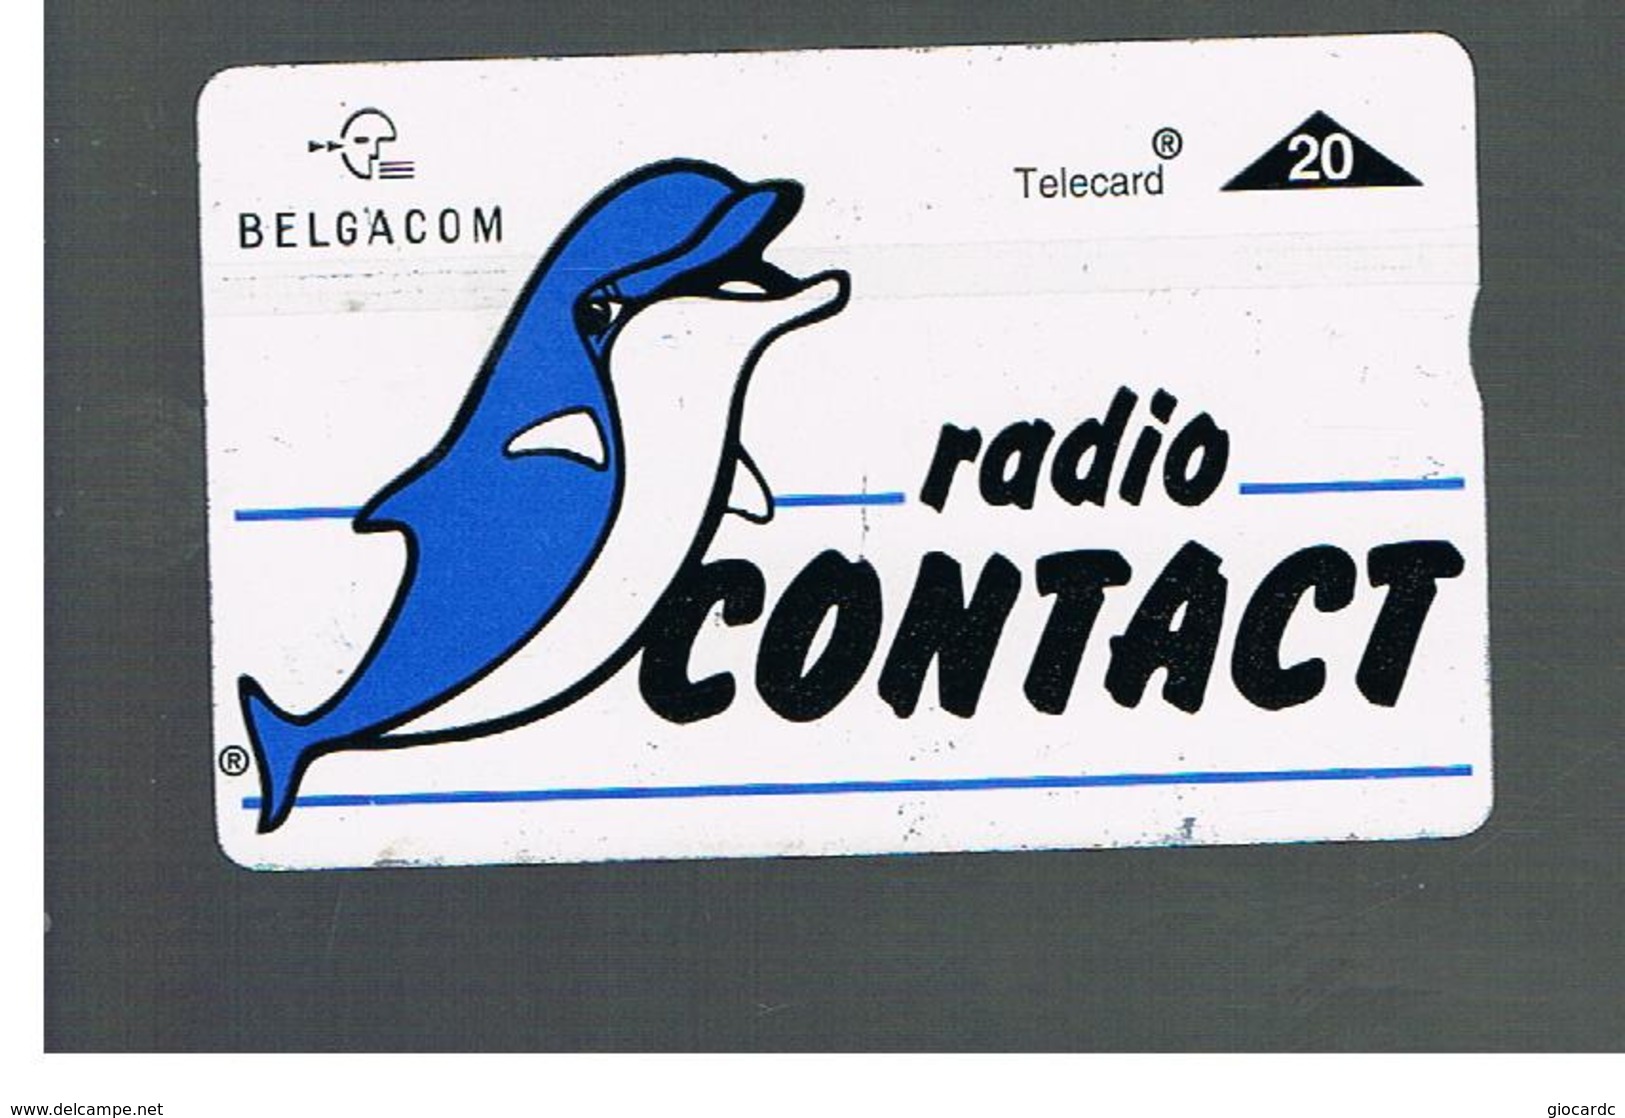 BELGIO (BELGIUM) -  1996  RADIO CONTACT, DELPHIN                - USED - RIF. 10835 - Dolphins